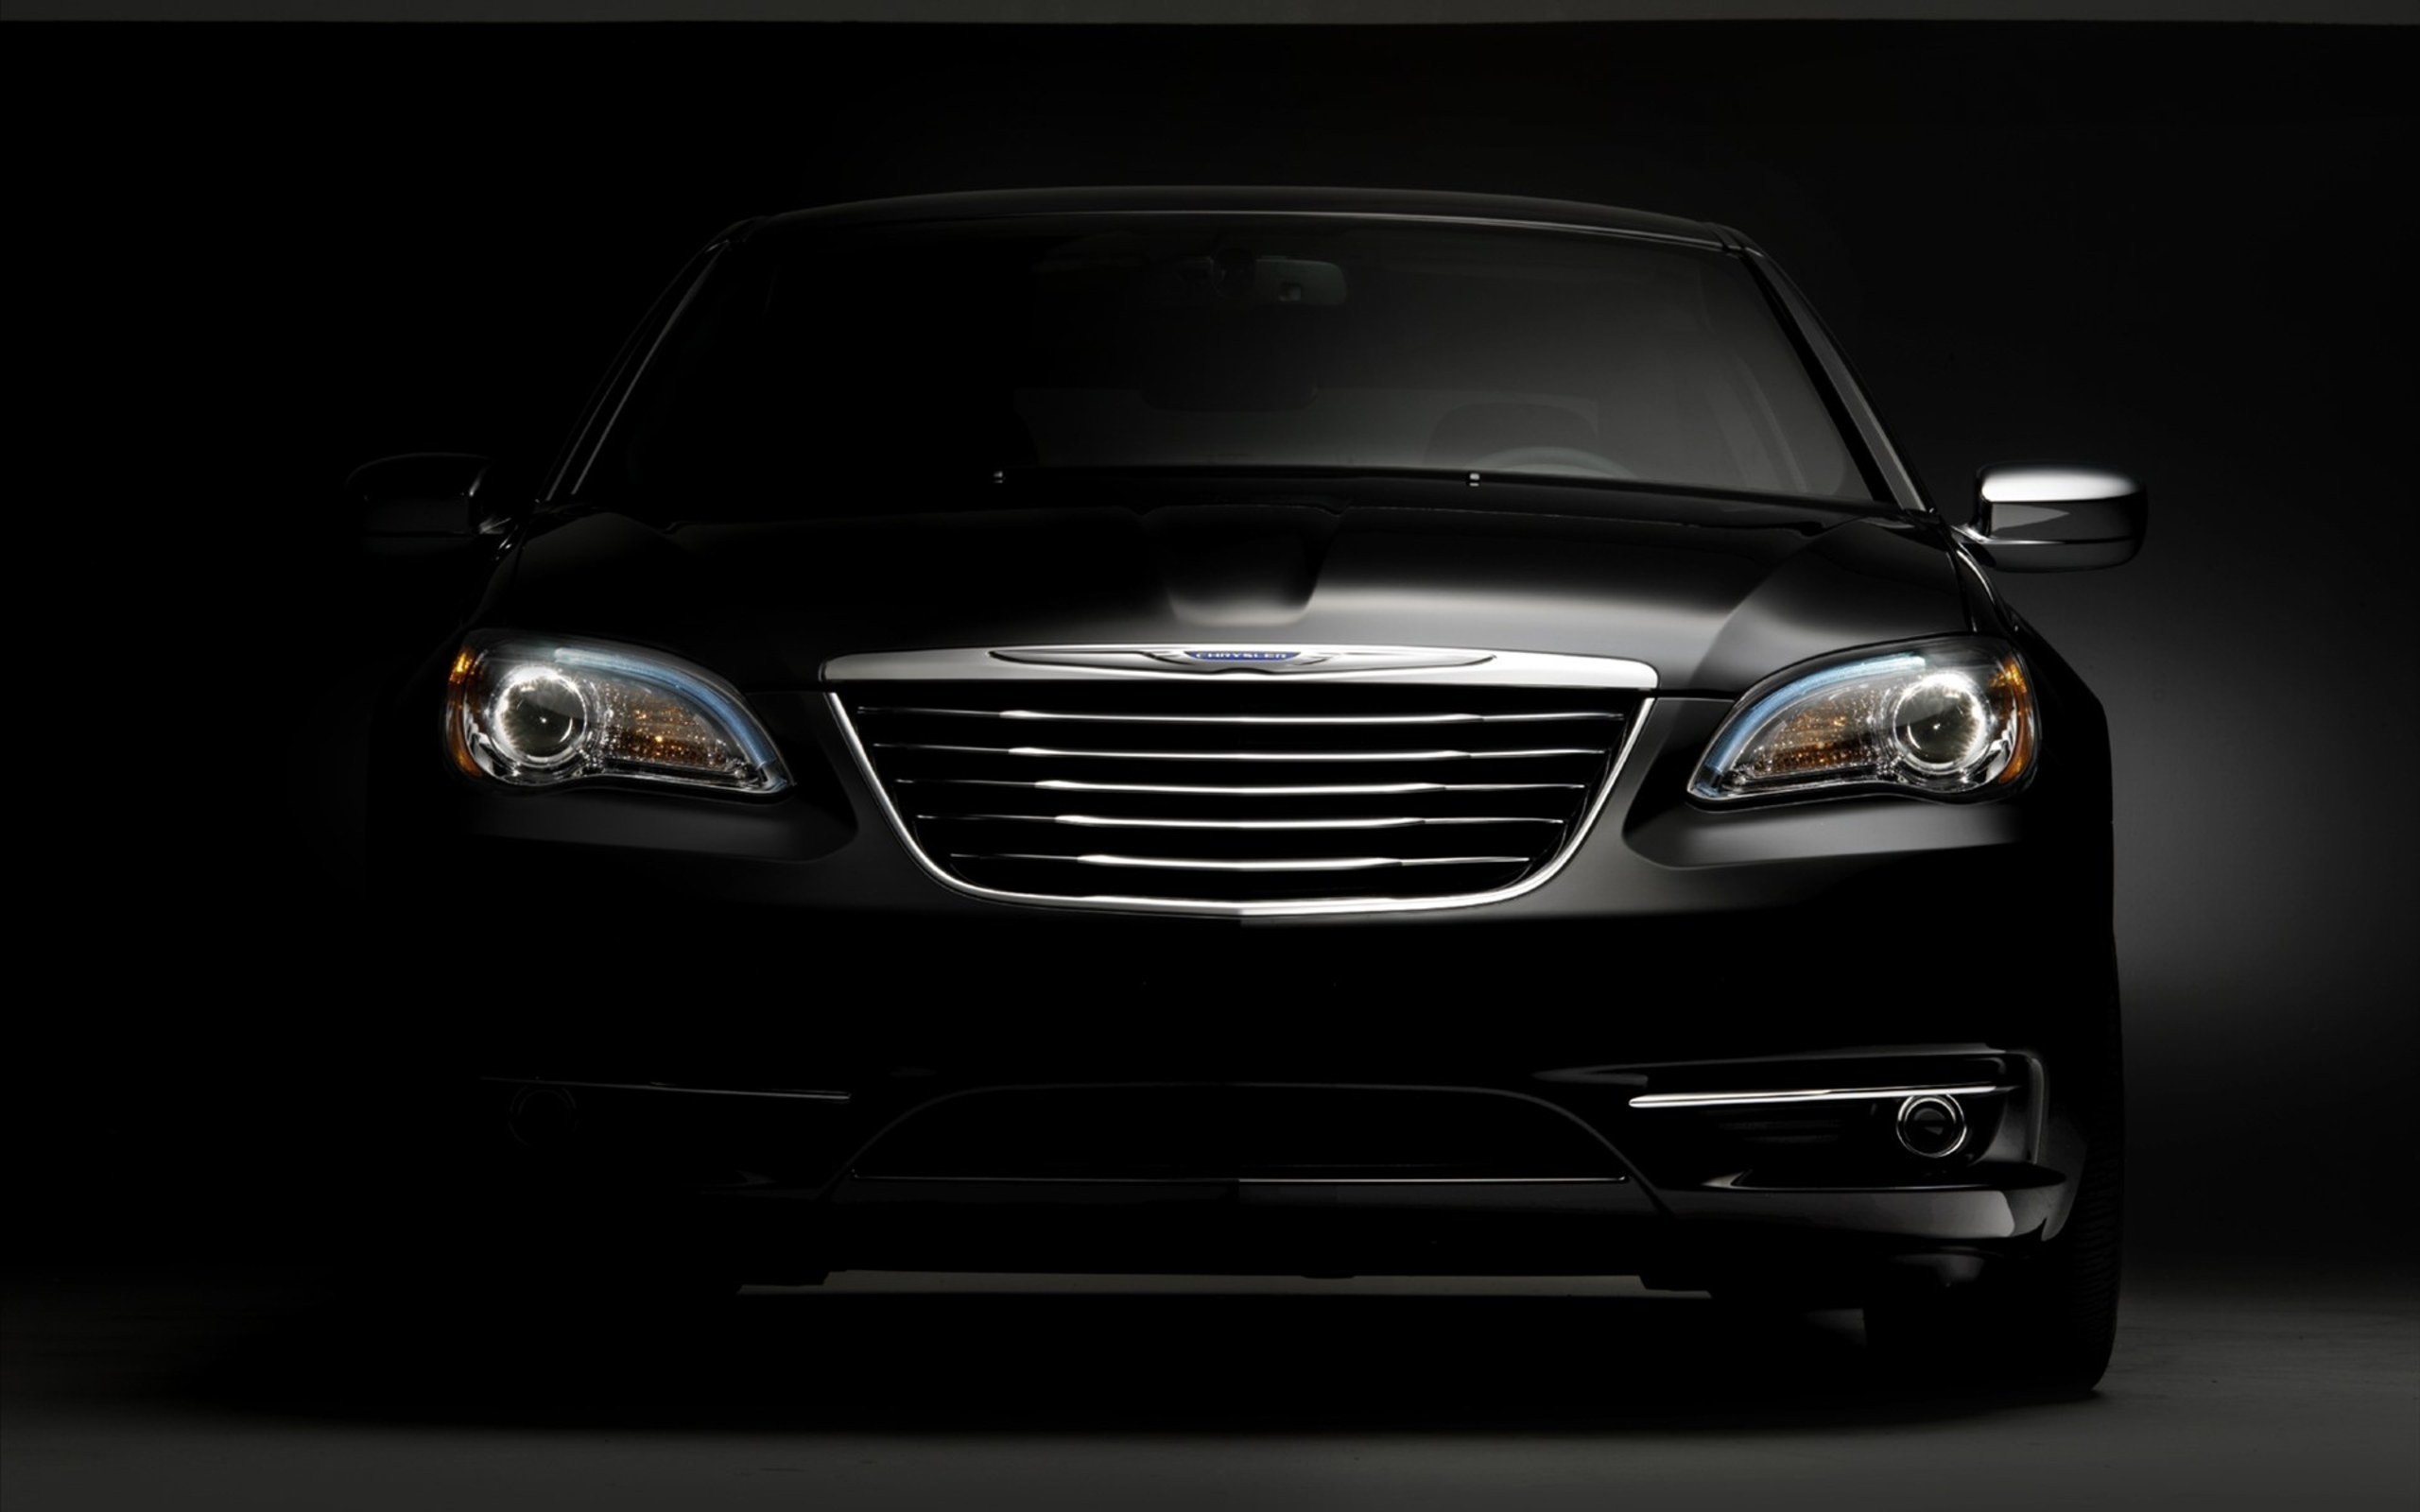 2560x1600 Black-Elegant-Car-wallpaper